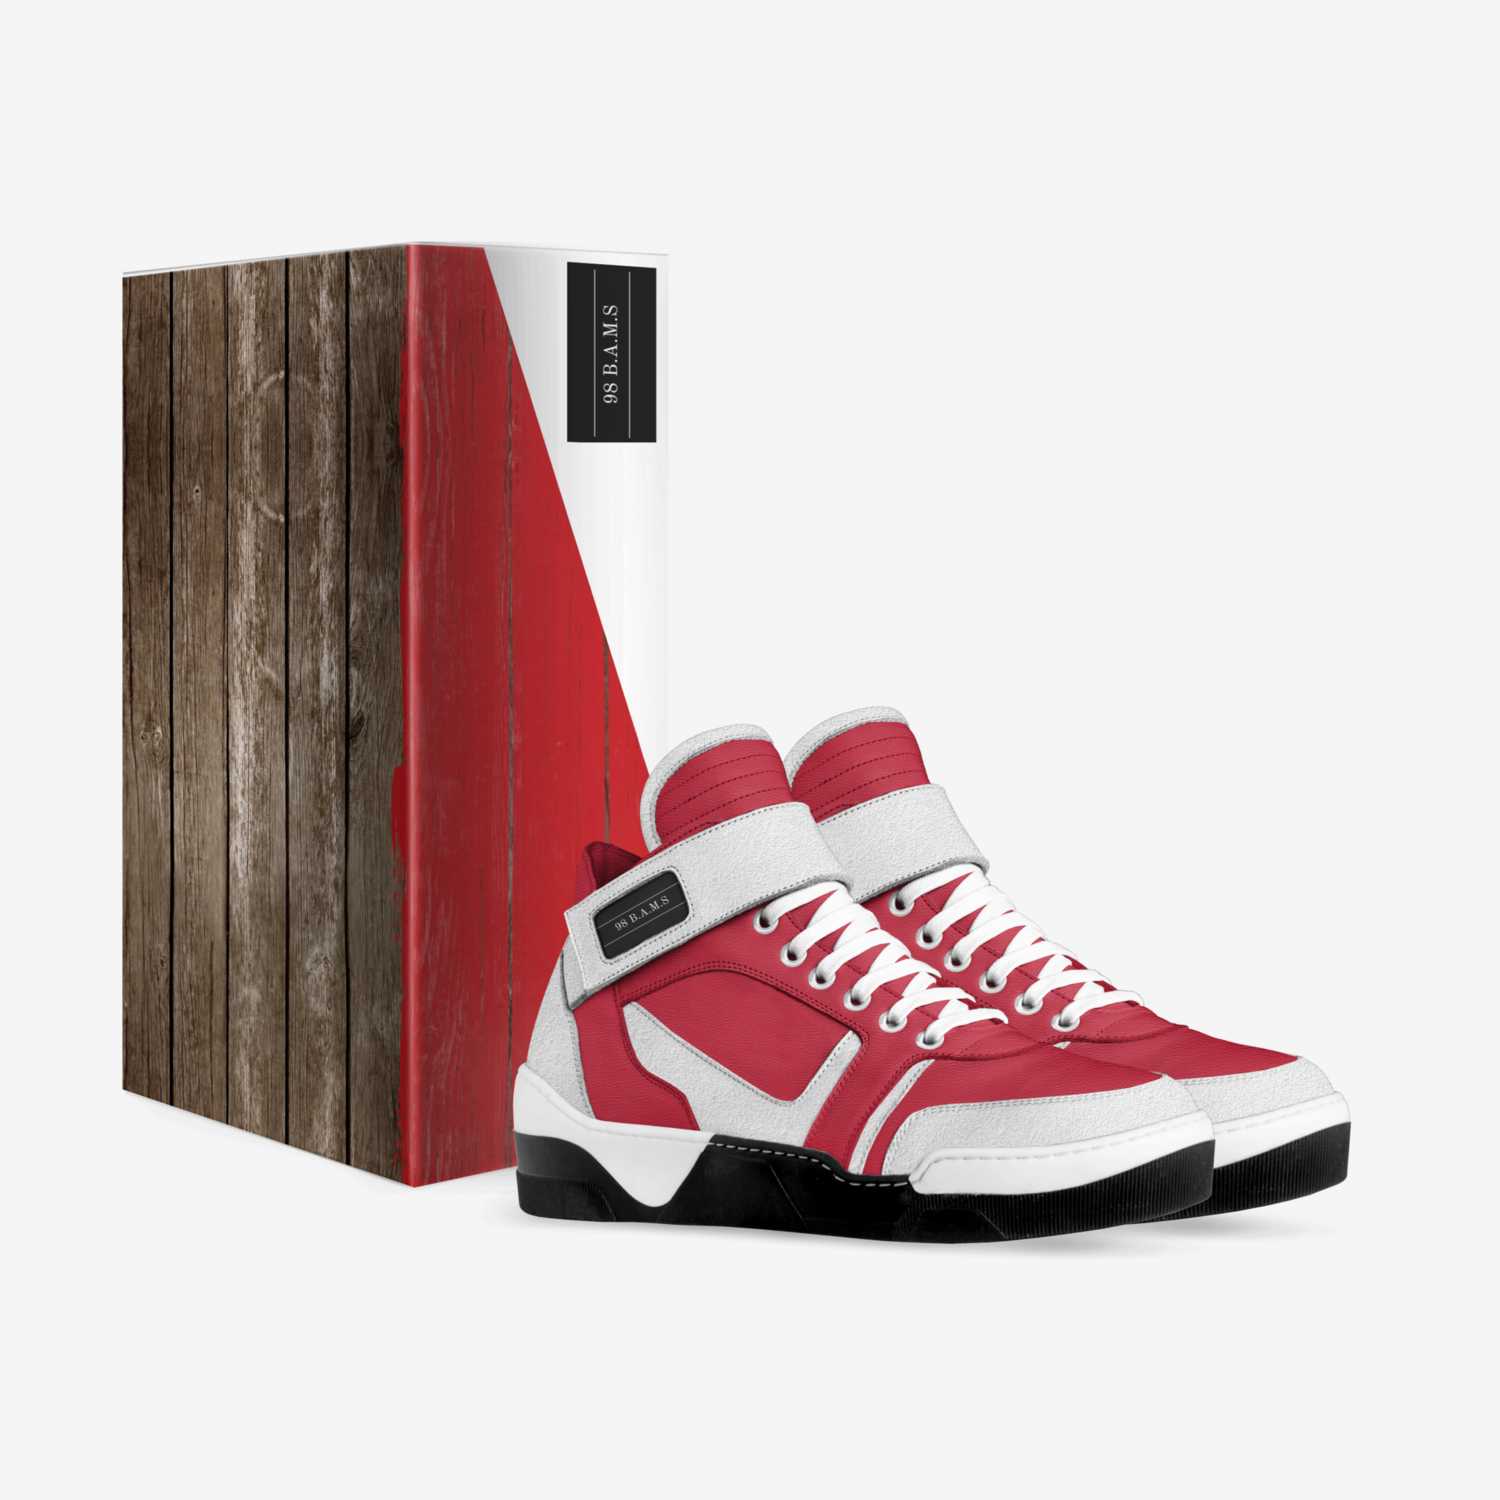 F.A.L.C.O.N.S custom made in Italy shoes by Jordan Prince | Box view